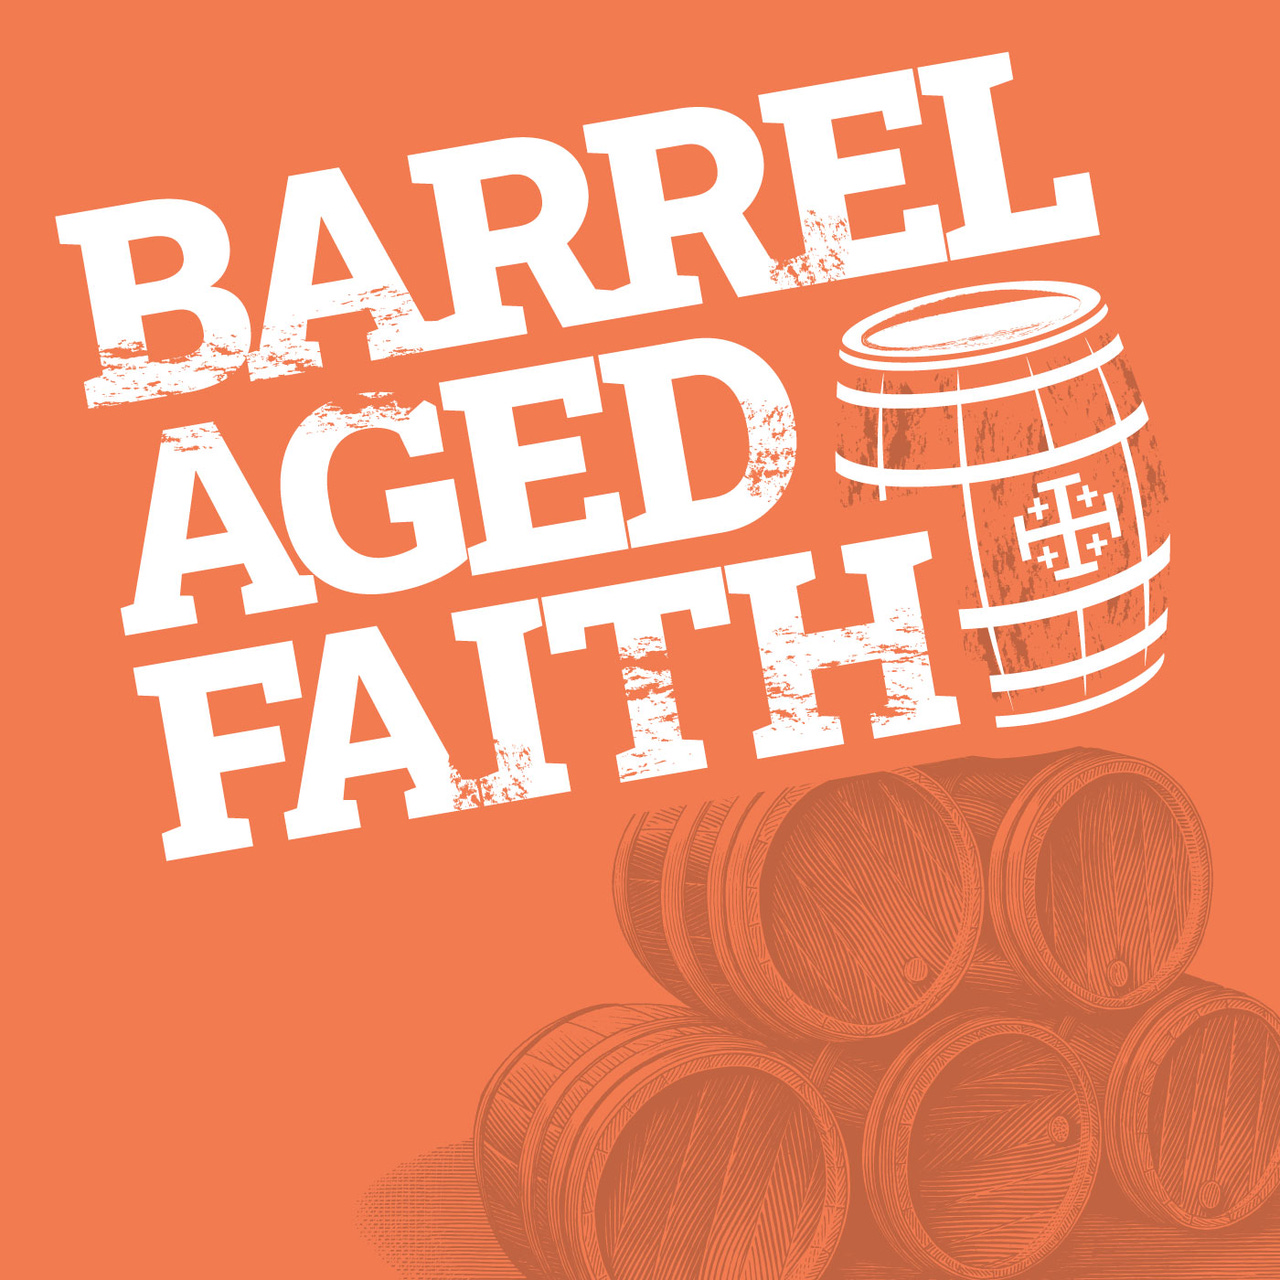 Barrel Aged Faith I Kyle King